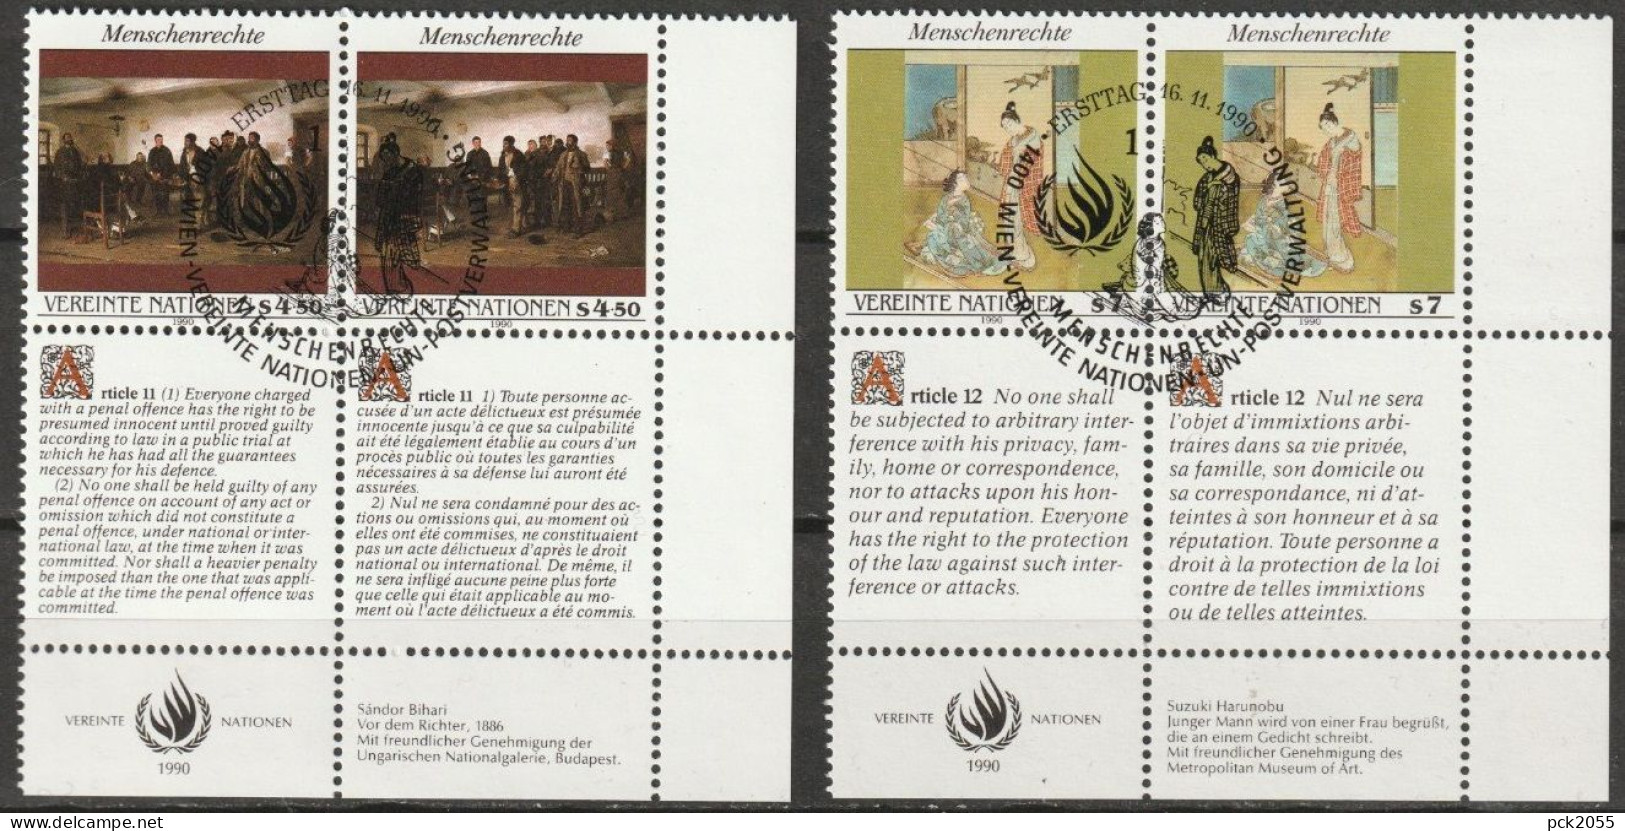 UNO Wien 1990 MiNr.108- 109 Paar O Gestempelt Menschenrechte ( 2752)  Günstige Versandkosten - Used Stamps